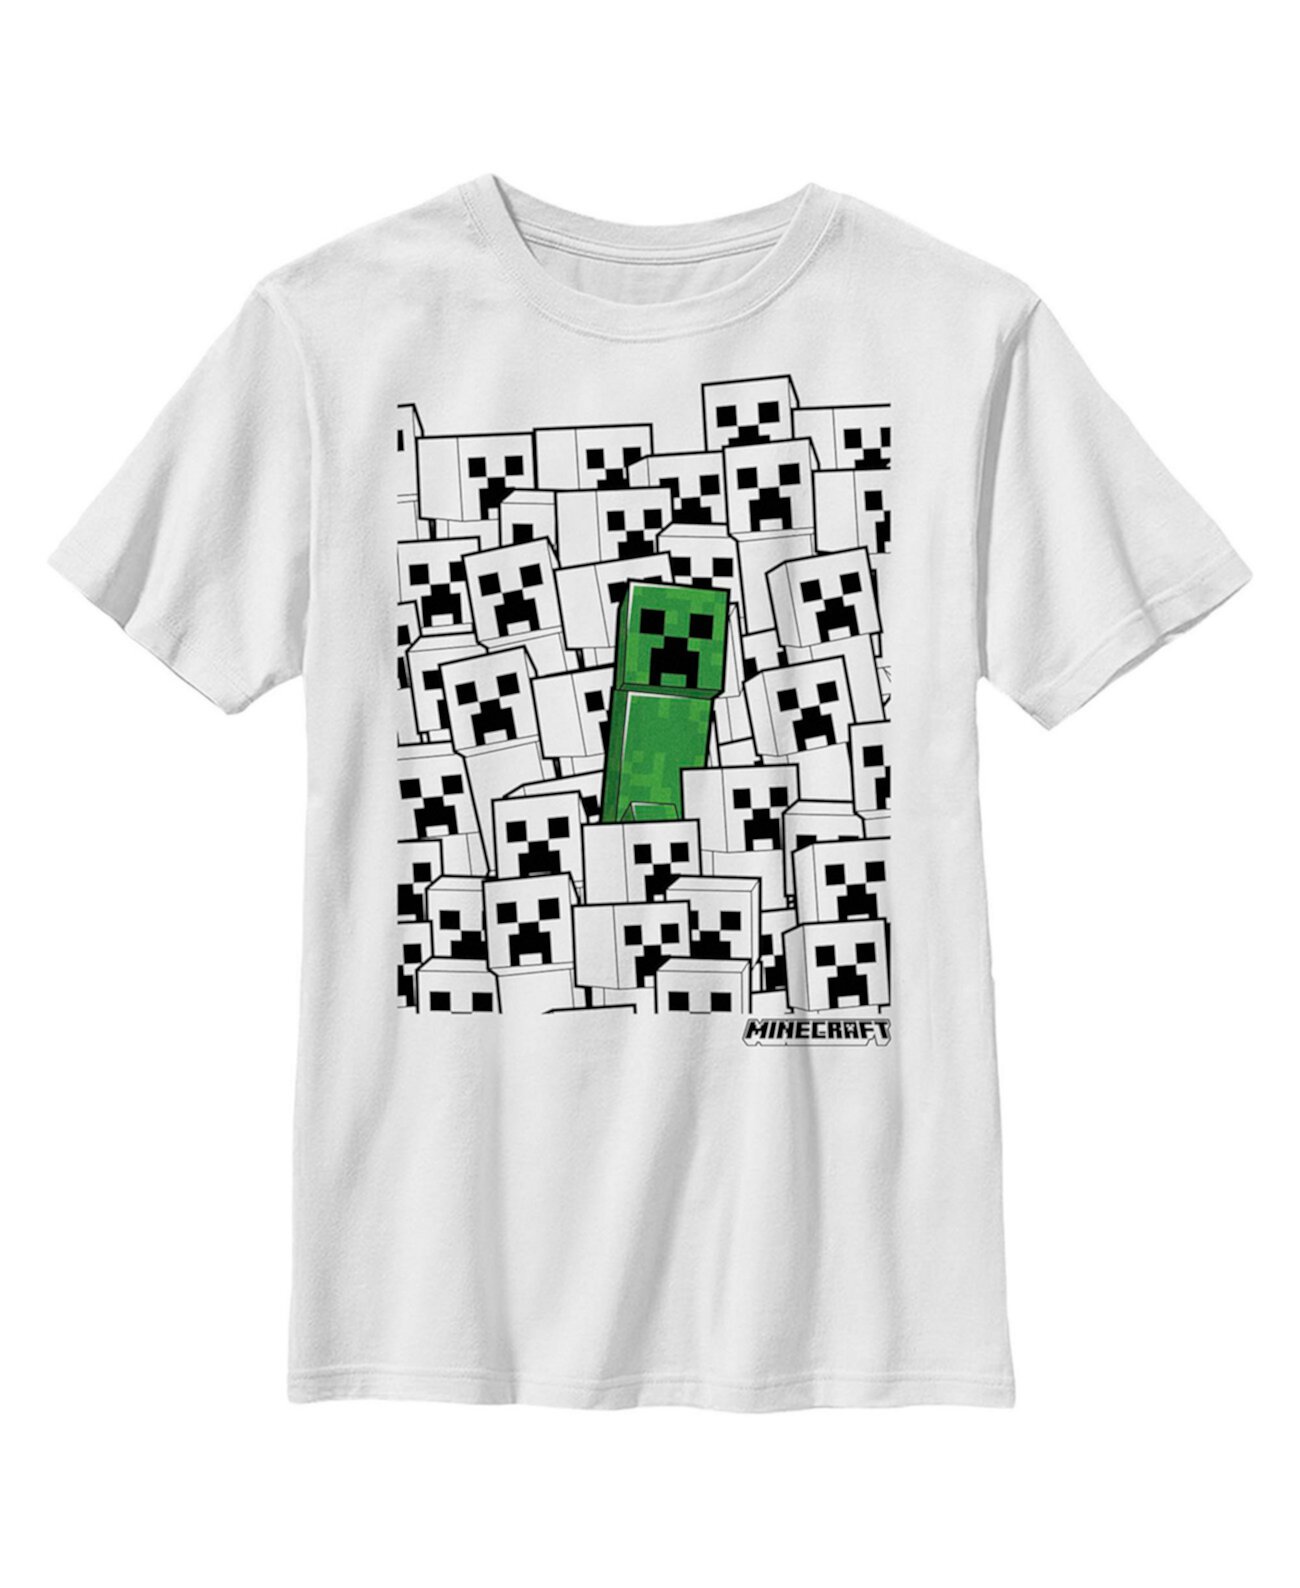 Зеленая детская футболка Minecraft Minecraft для мальчиков Microsoft